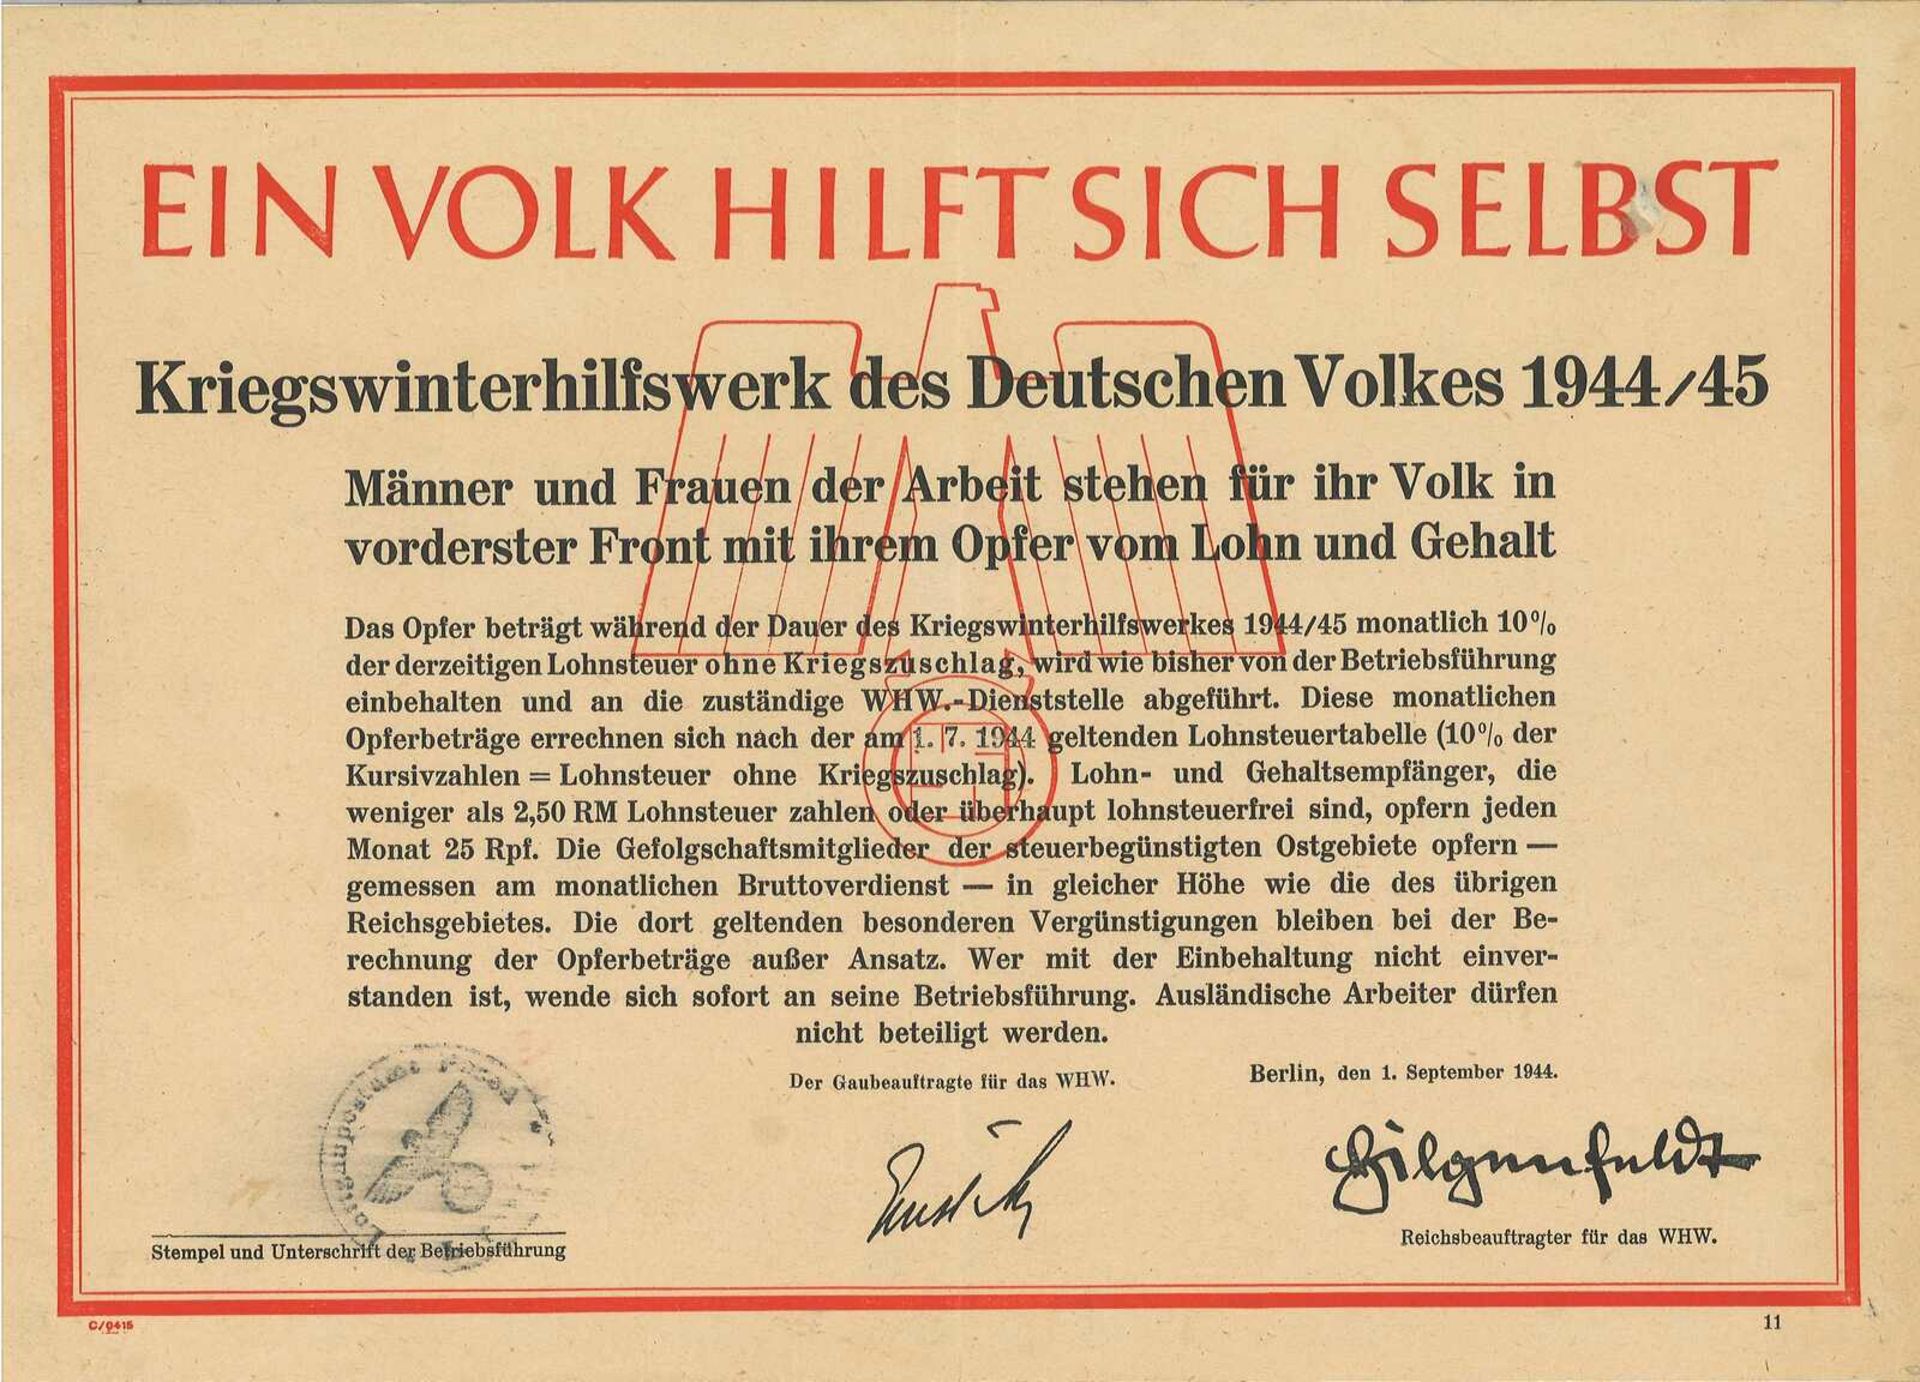 Plakat / Papier in A4 von Kriegswinterhilfswerk des Deutschen Volkes von 1944, über die monatliche